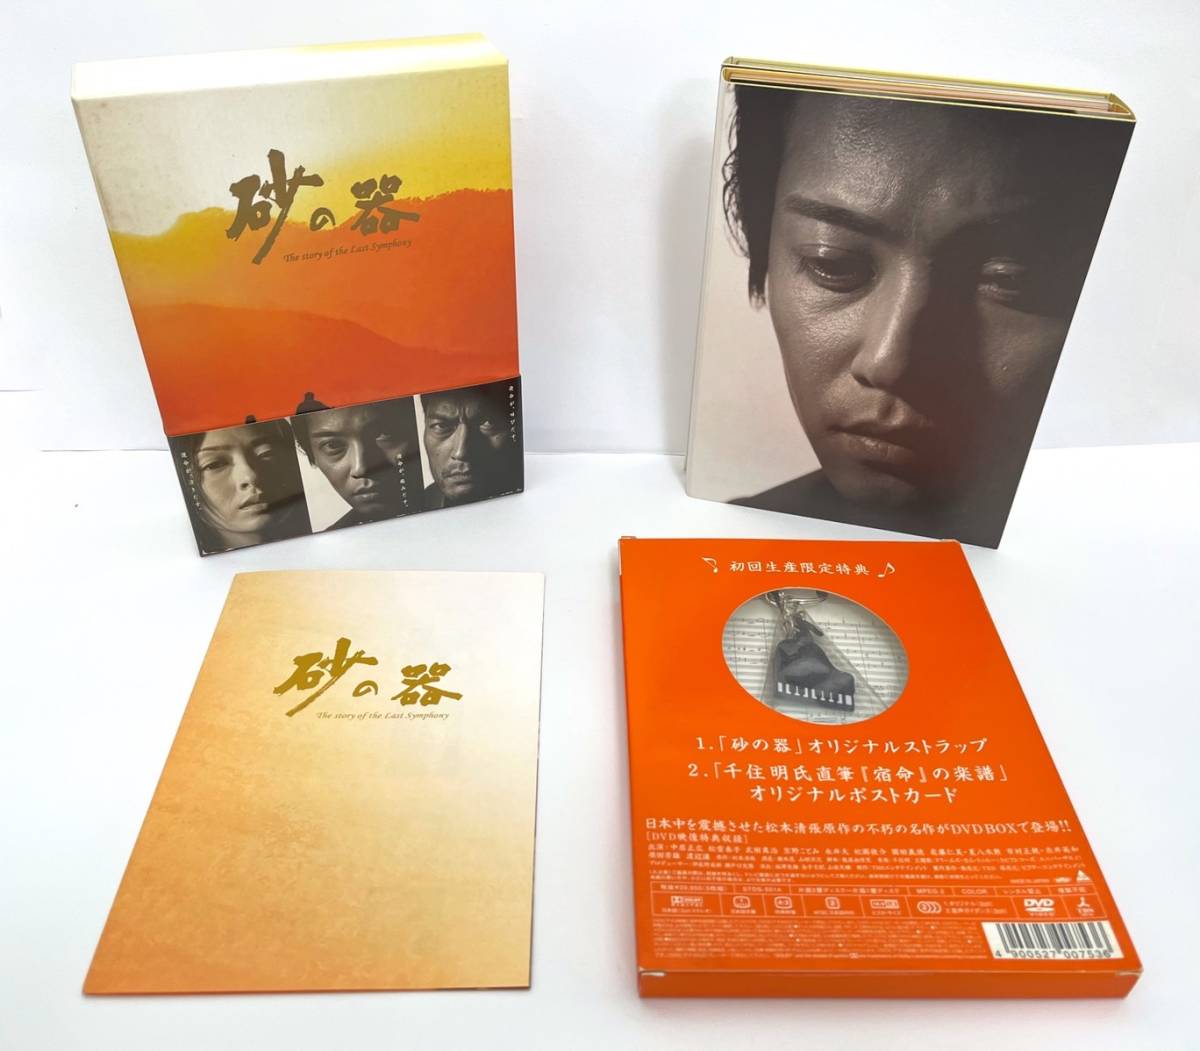 砂の器 DVD-BOX - www.johnsonurban.com